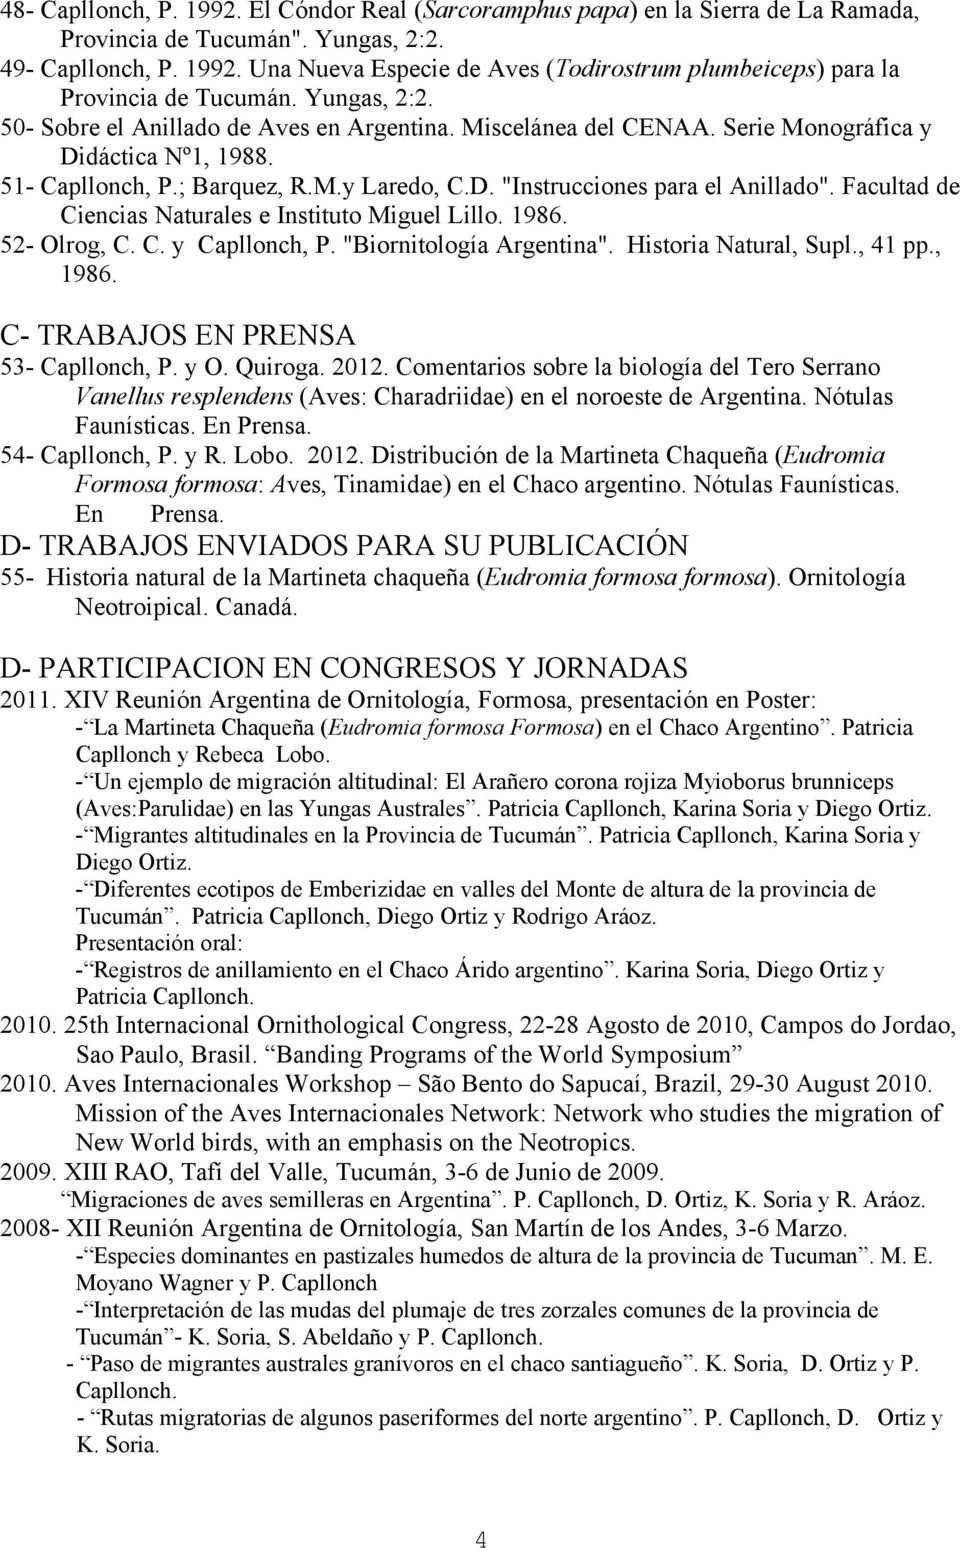 Facultad de Ciencias Naturales e Instituto Miguel Lillo. 1986. 52- Olrog, C. C. y Capllonch, P. "Biornitología Argentina". Historia Natural, Supl., 41 pp., 1986.